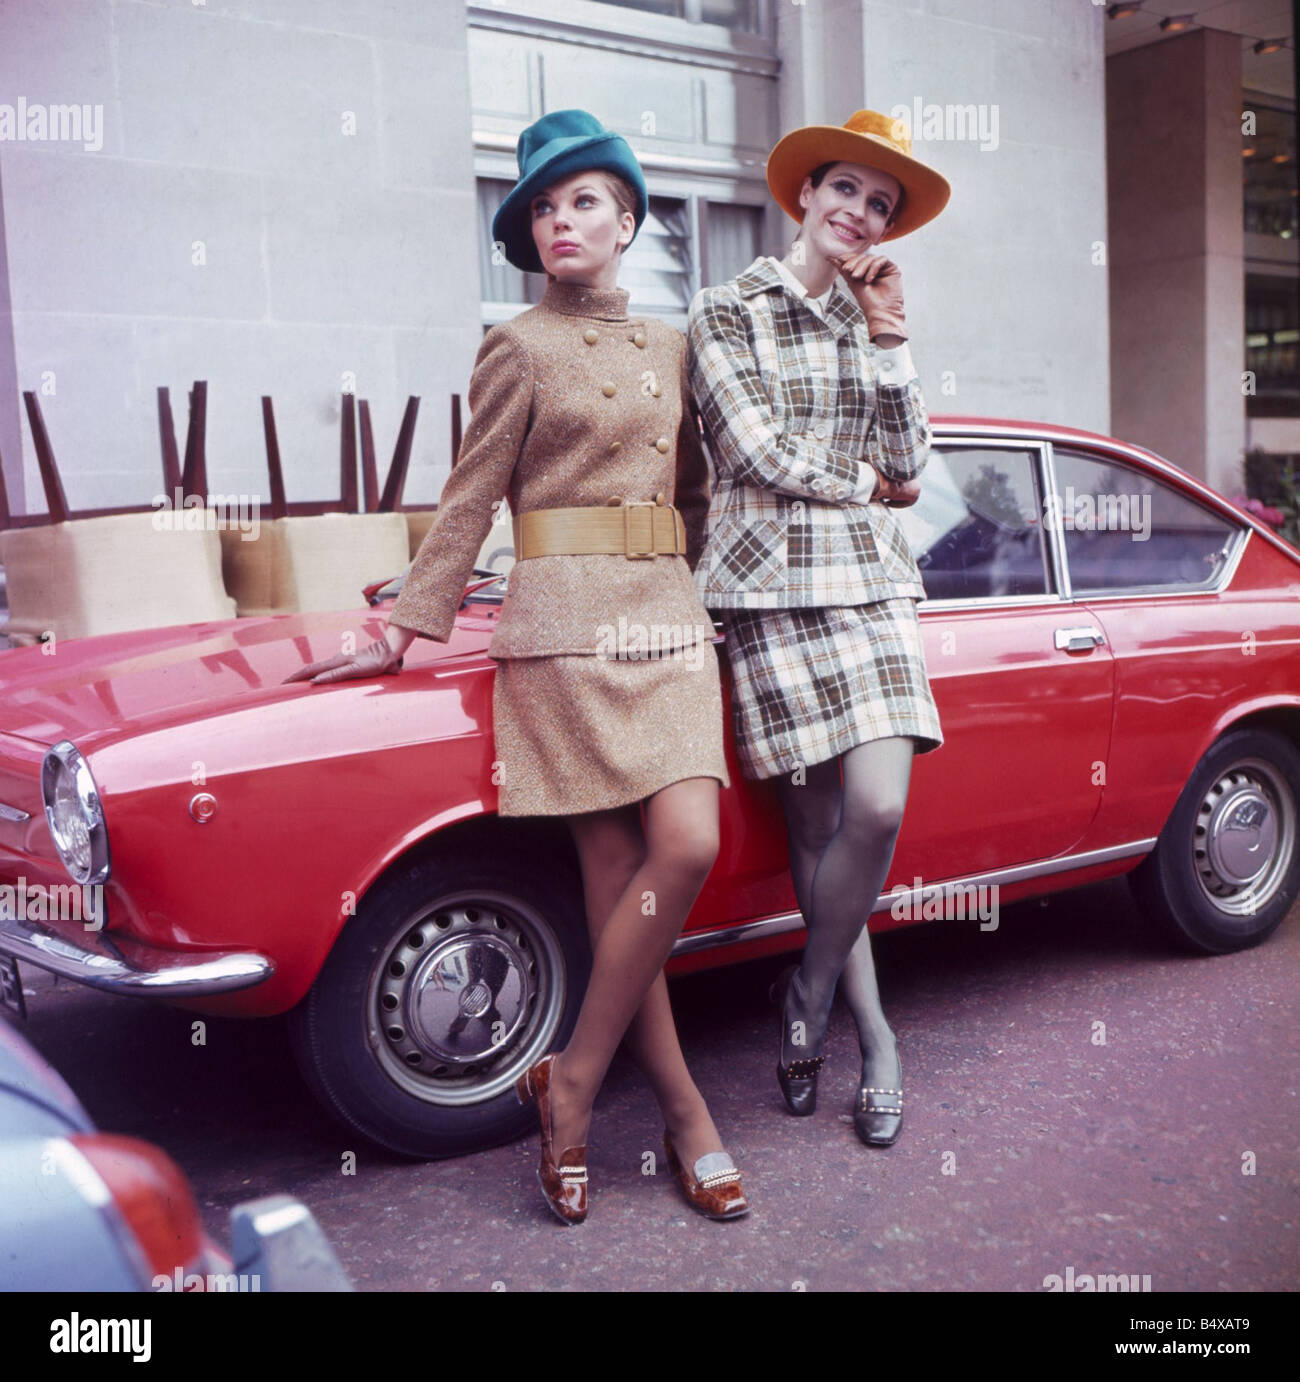 La mode des années 60 années 60 femmes avec des chapeaux Vêtements voiture s'appuyant sur les tendances de la laine Tweed irlandais spectacle International Fashions Banque D'Images